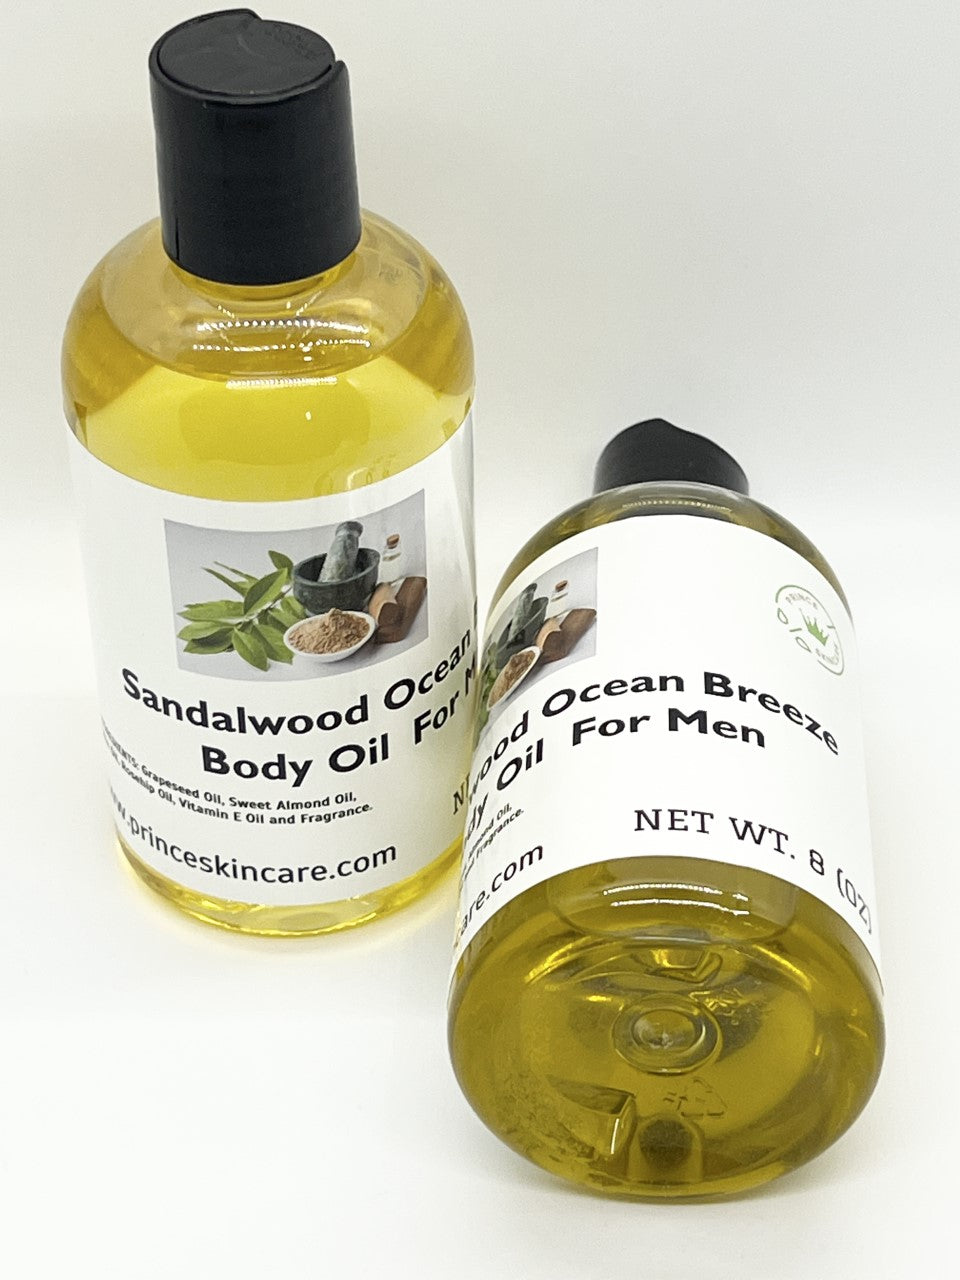 Sandalwood Body Oil For Men